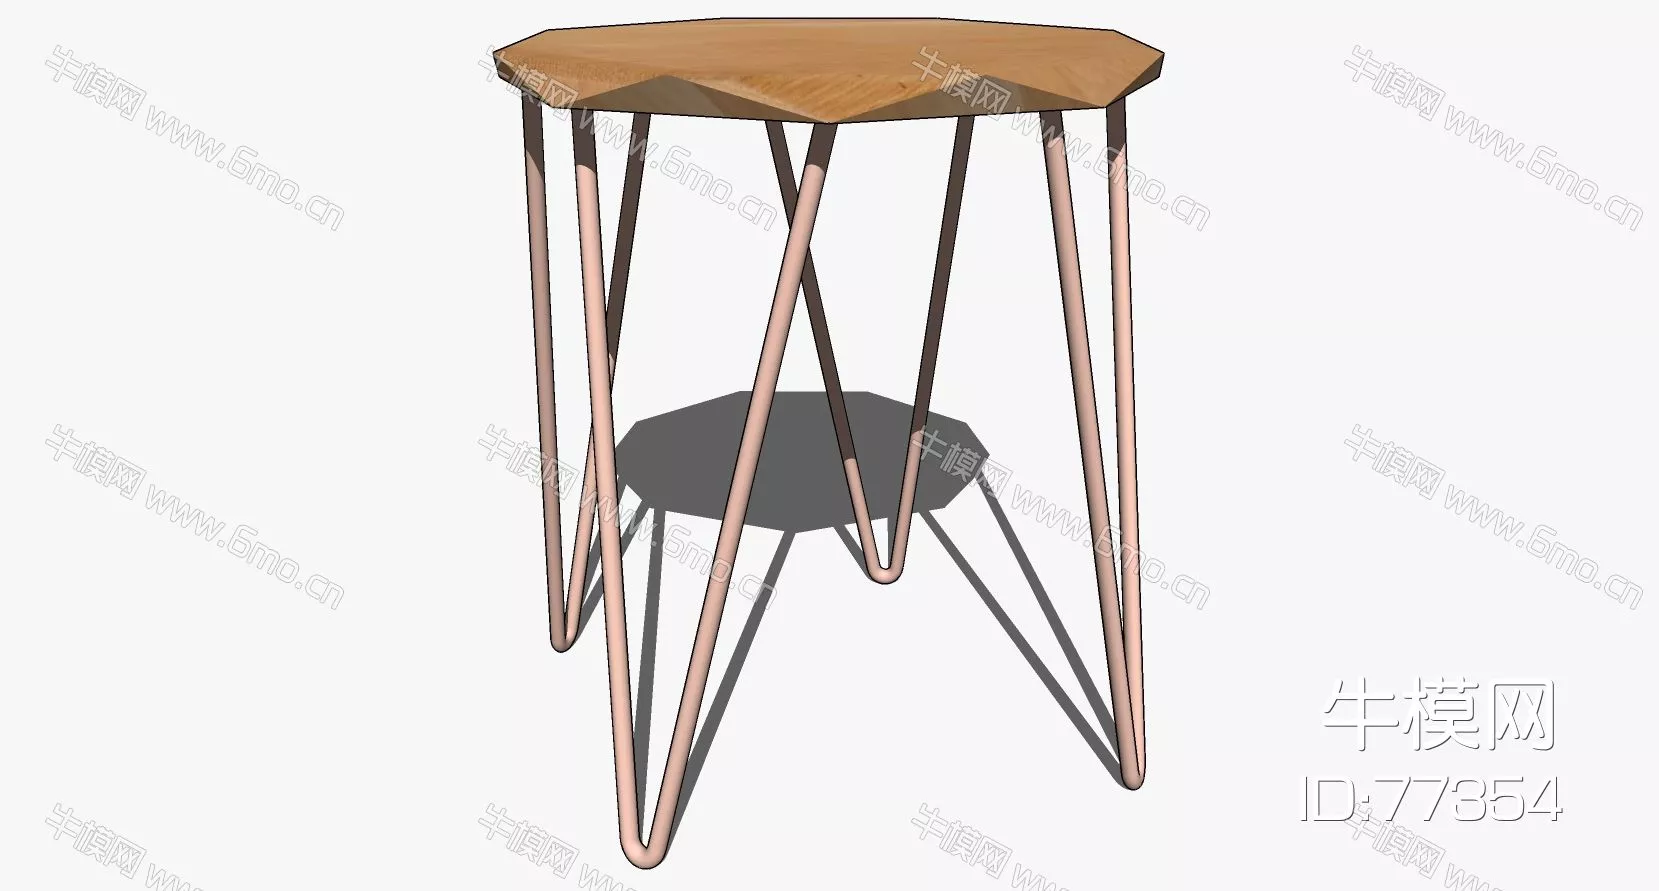 NORDIC SIDE TABLE - SKETCHUP 3D MODEL - ENSCAPE - 77354